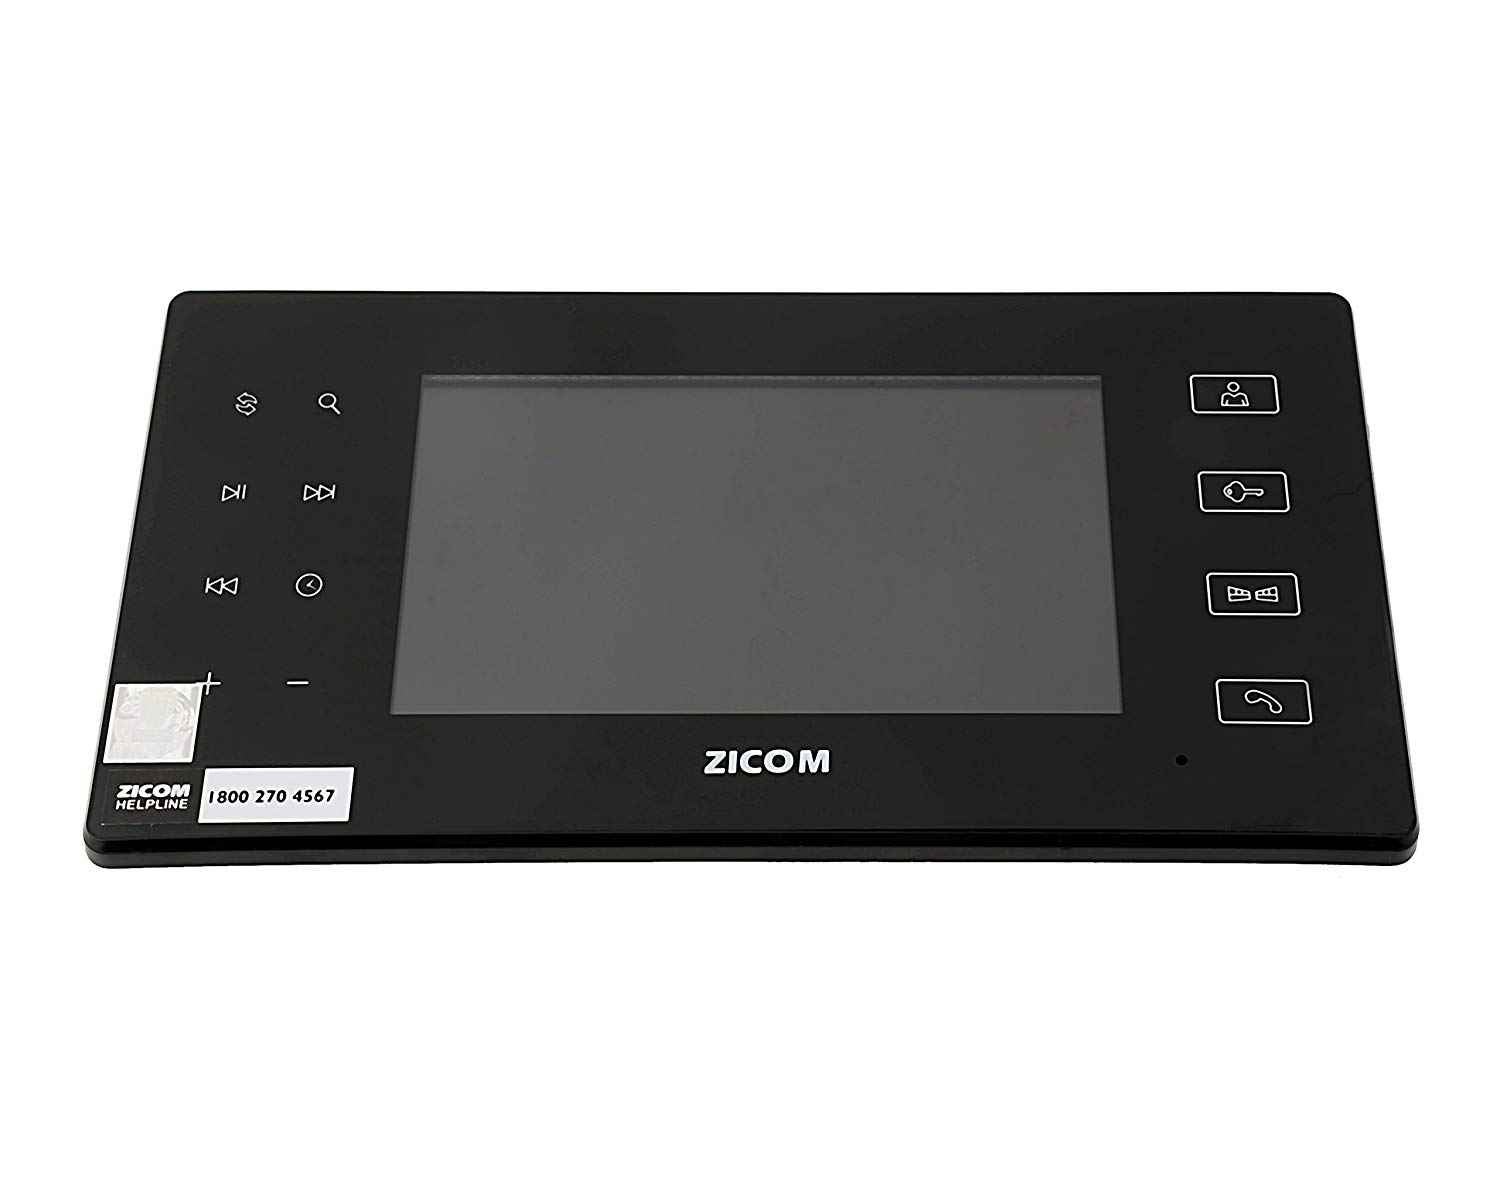 zicom video door phone price